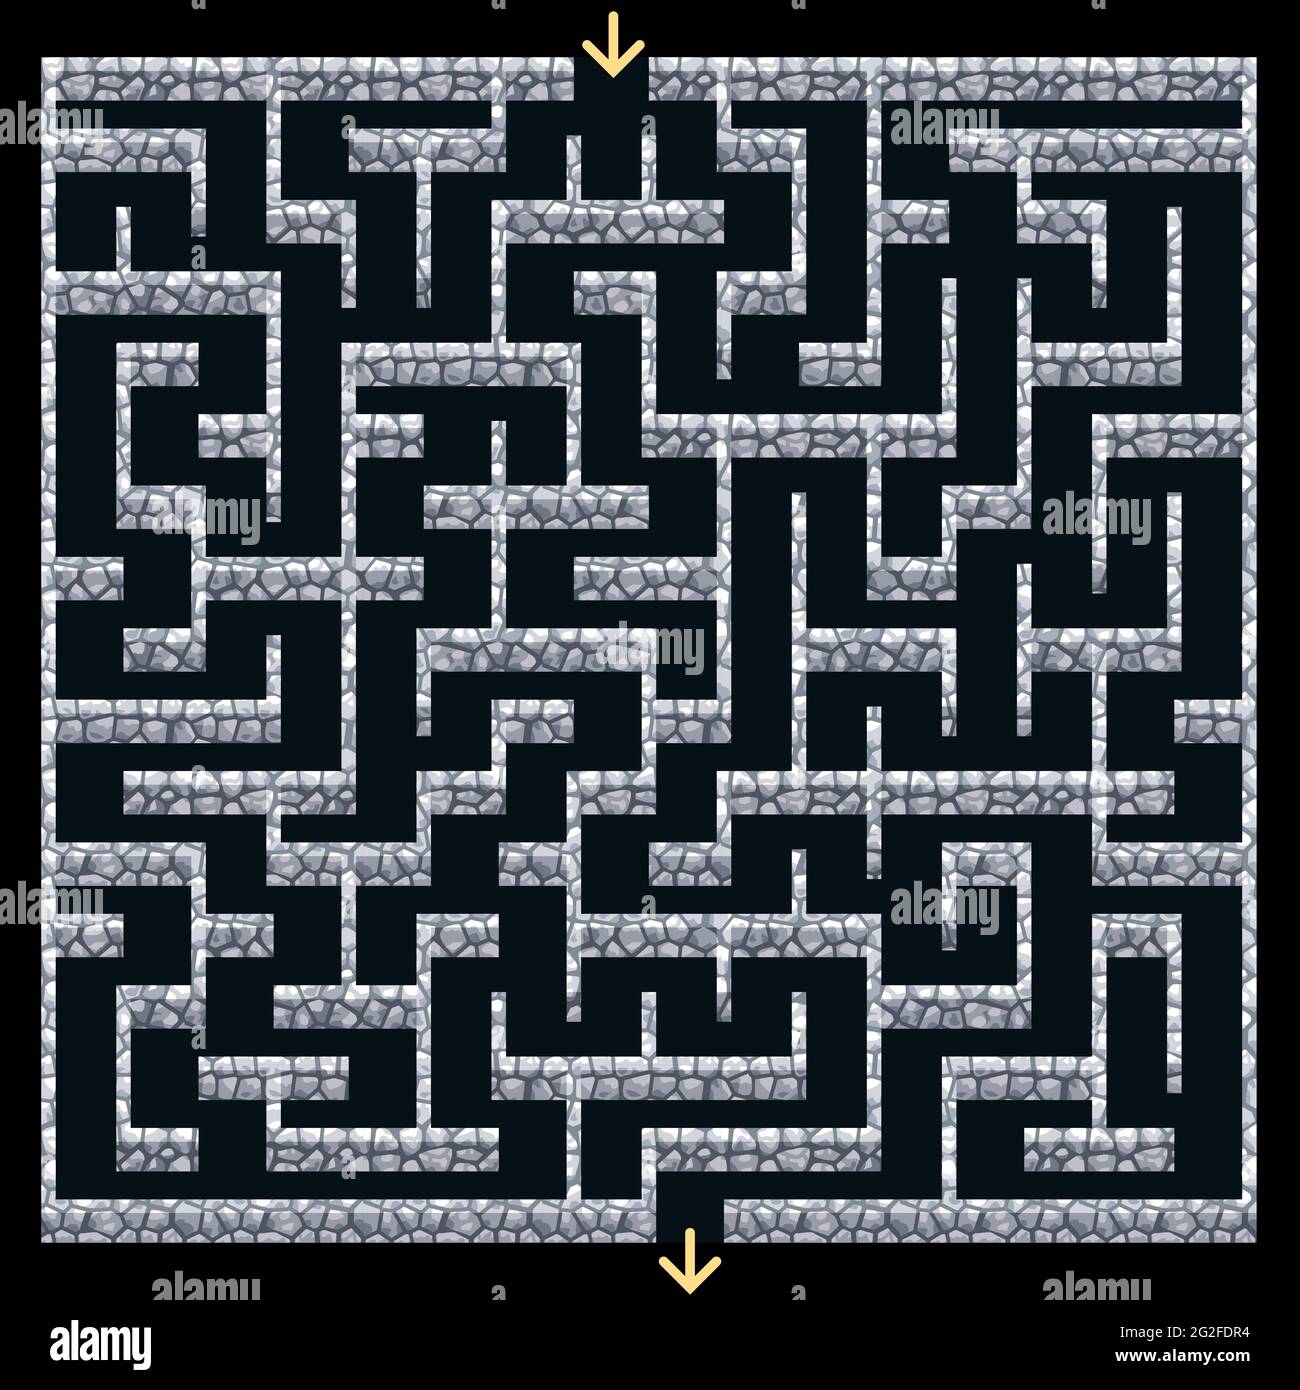 3D Labyrinth, Labyrinth mit Steinwänden.Dungeon Flucht oder Puzzle-Spiel-Level-Design. Draufsicht. Vektorgrafik Stock Vektor